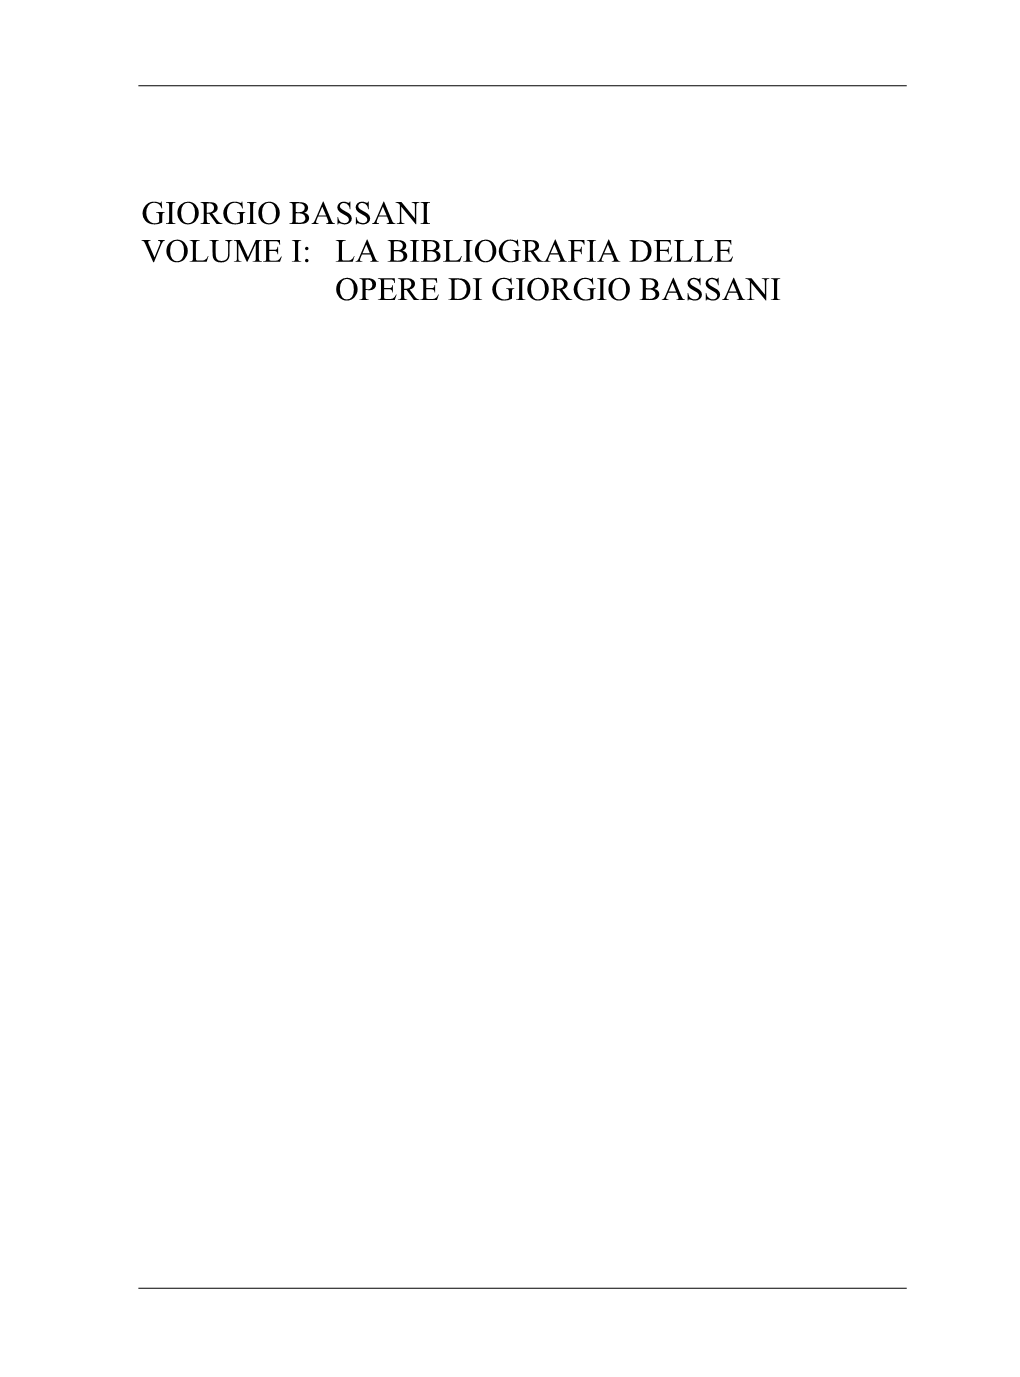 LA BIBLIOGRAFIA DELLE OPERE DI GIORGIO BASSANI Bozzetto Su Carta Per Il Doppio Ritratto, 1998, Di Richard Piccolo Giorgio Bassani